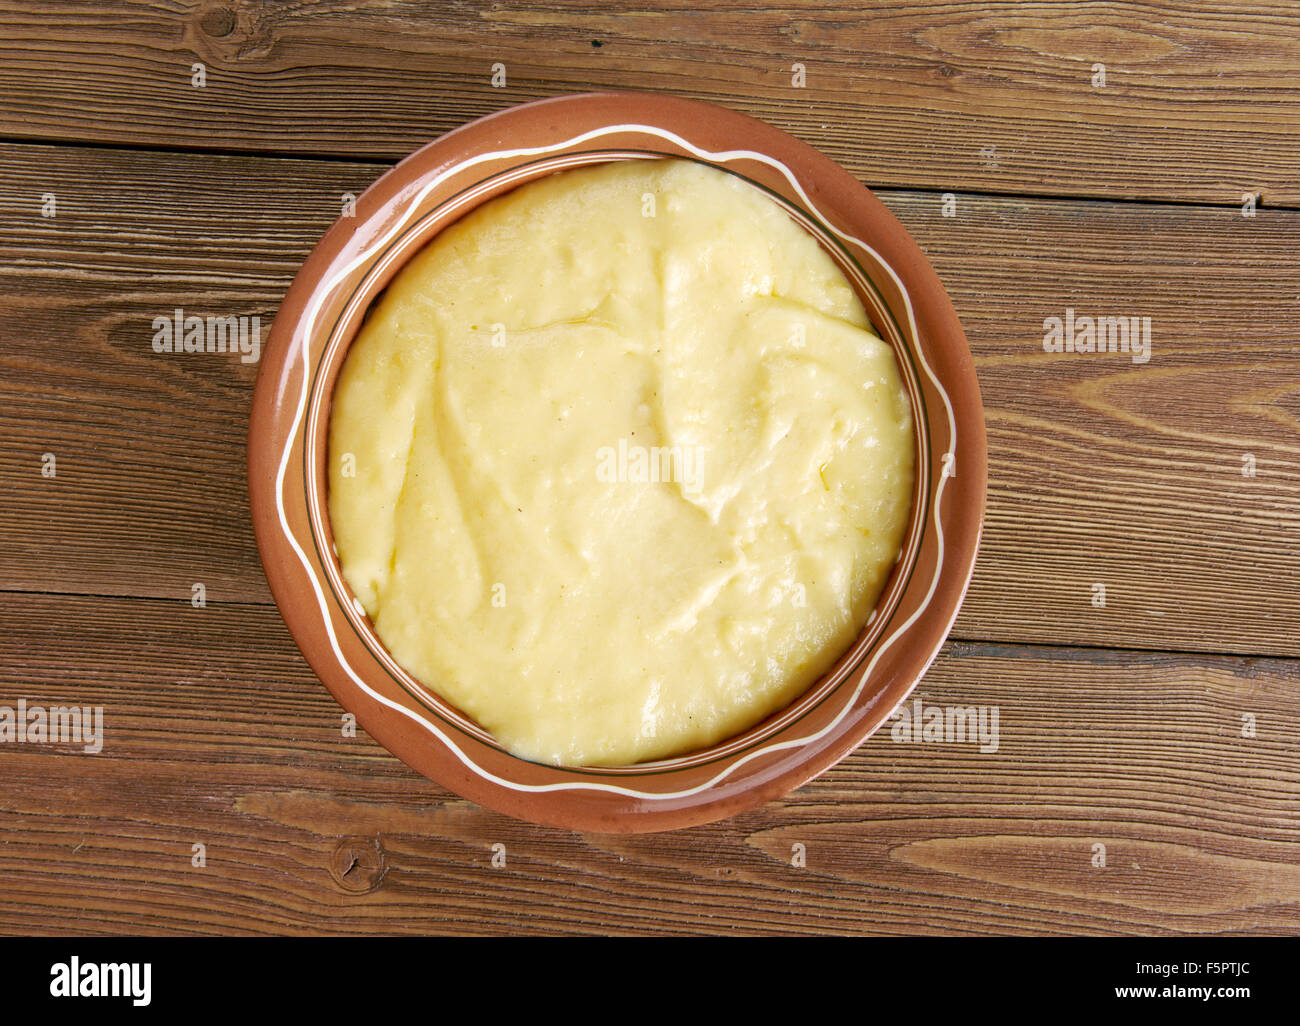 Muhlama - corn porridge with cheese.Turkish cuisine Stock Photo